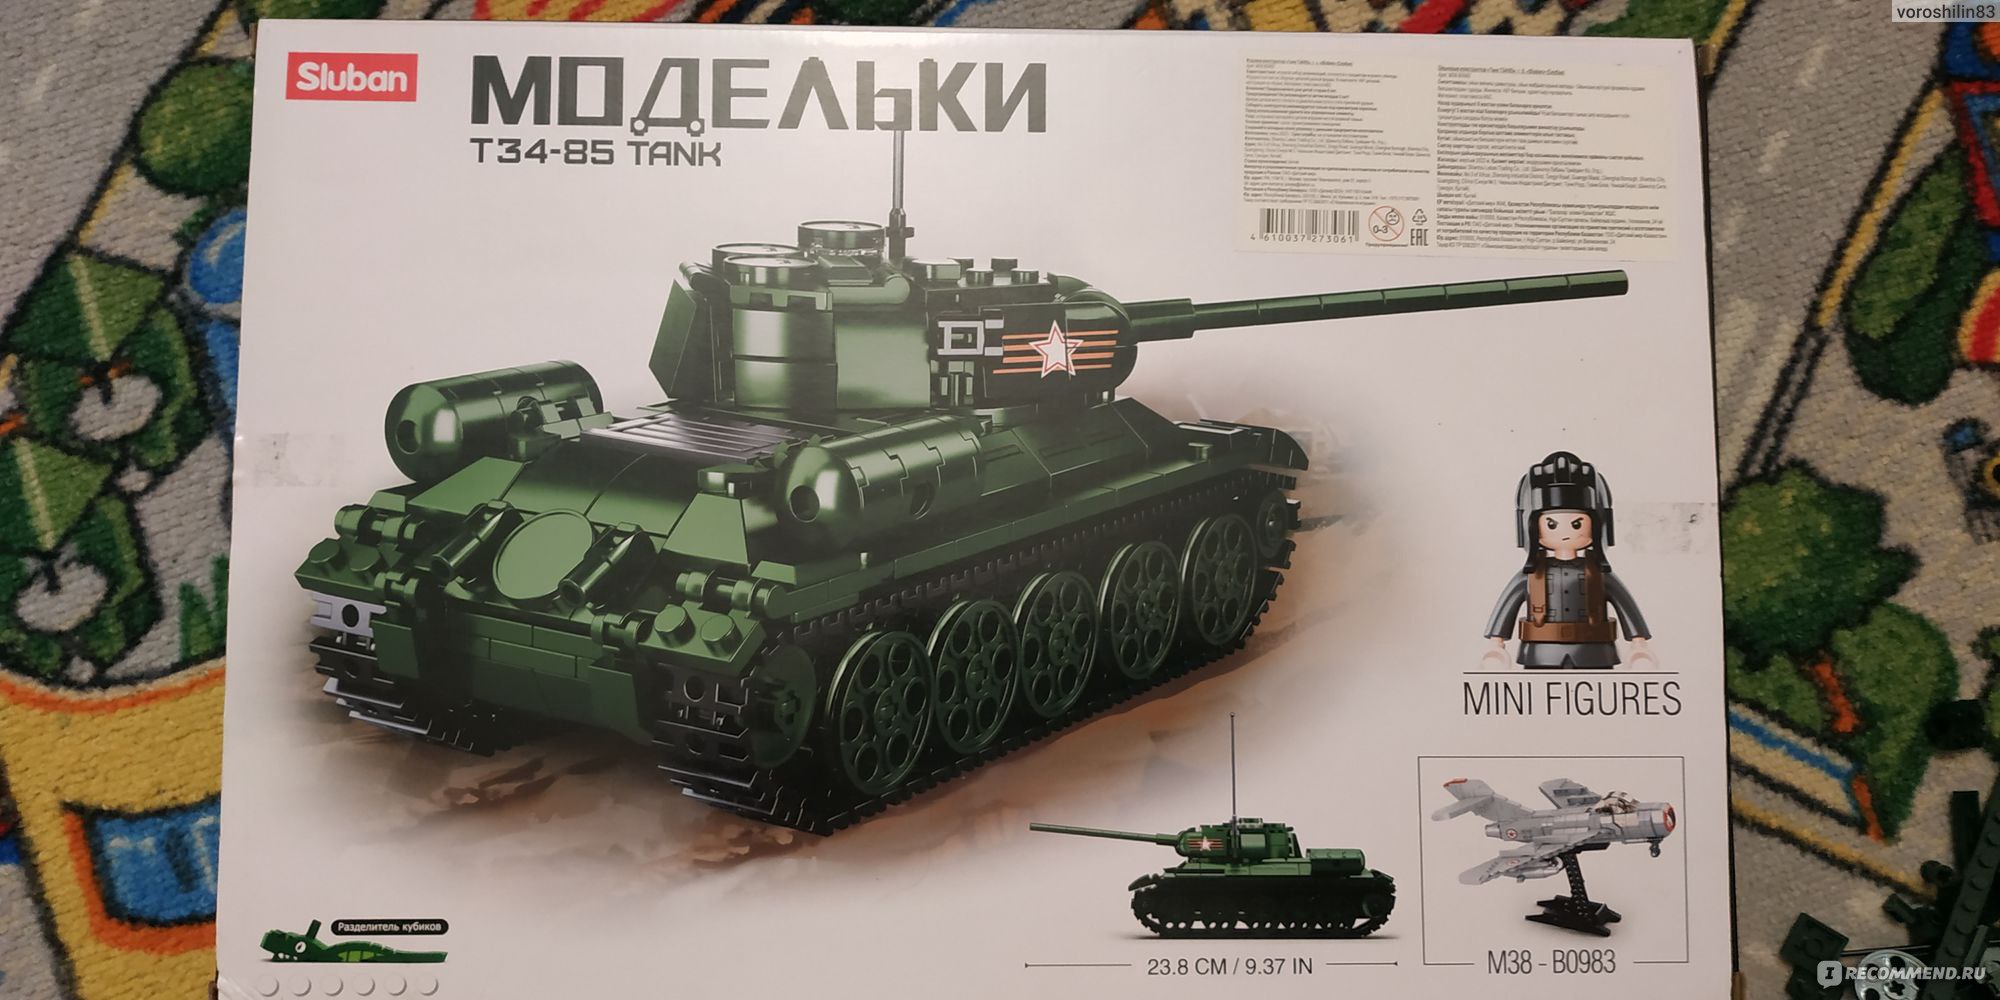 Сборная модель Звезда советский танк Т-34/85 1:35 (подарочный набор)